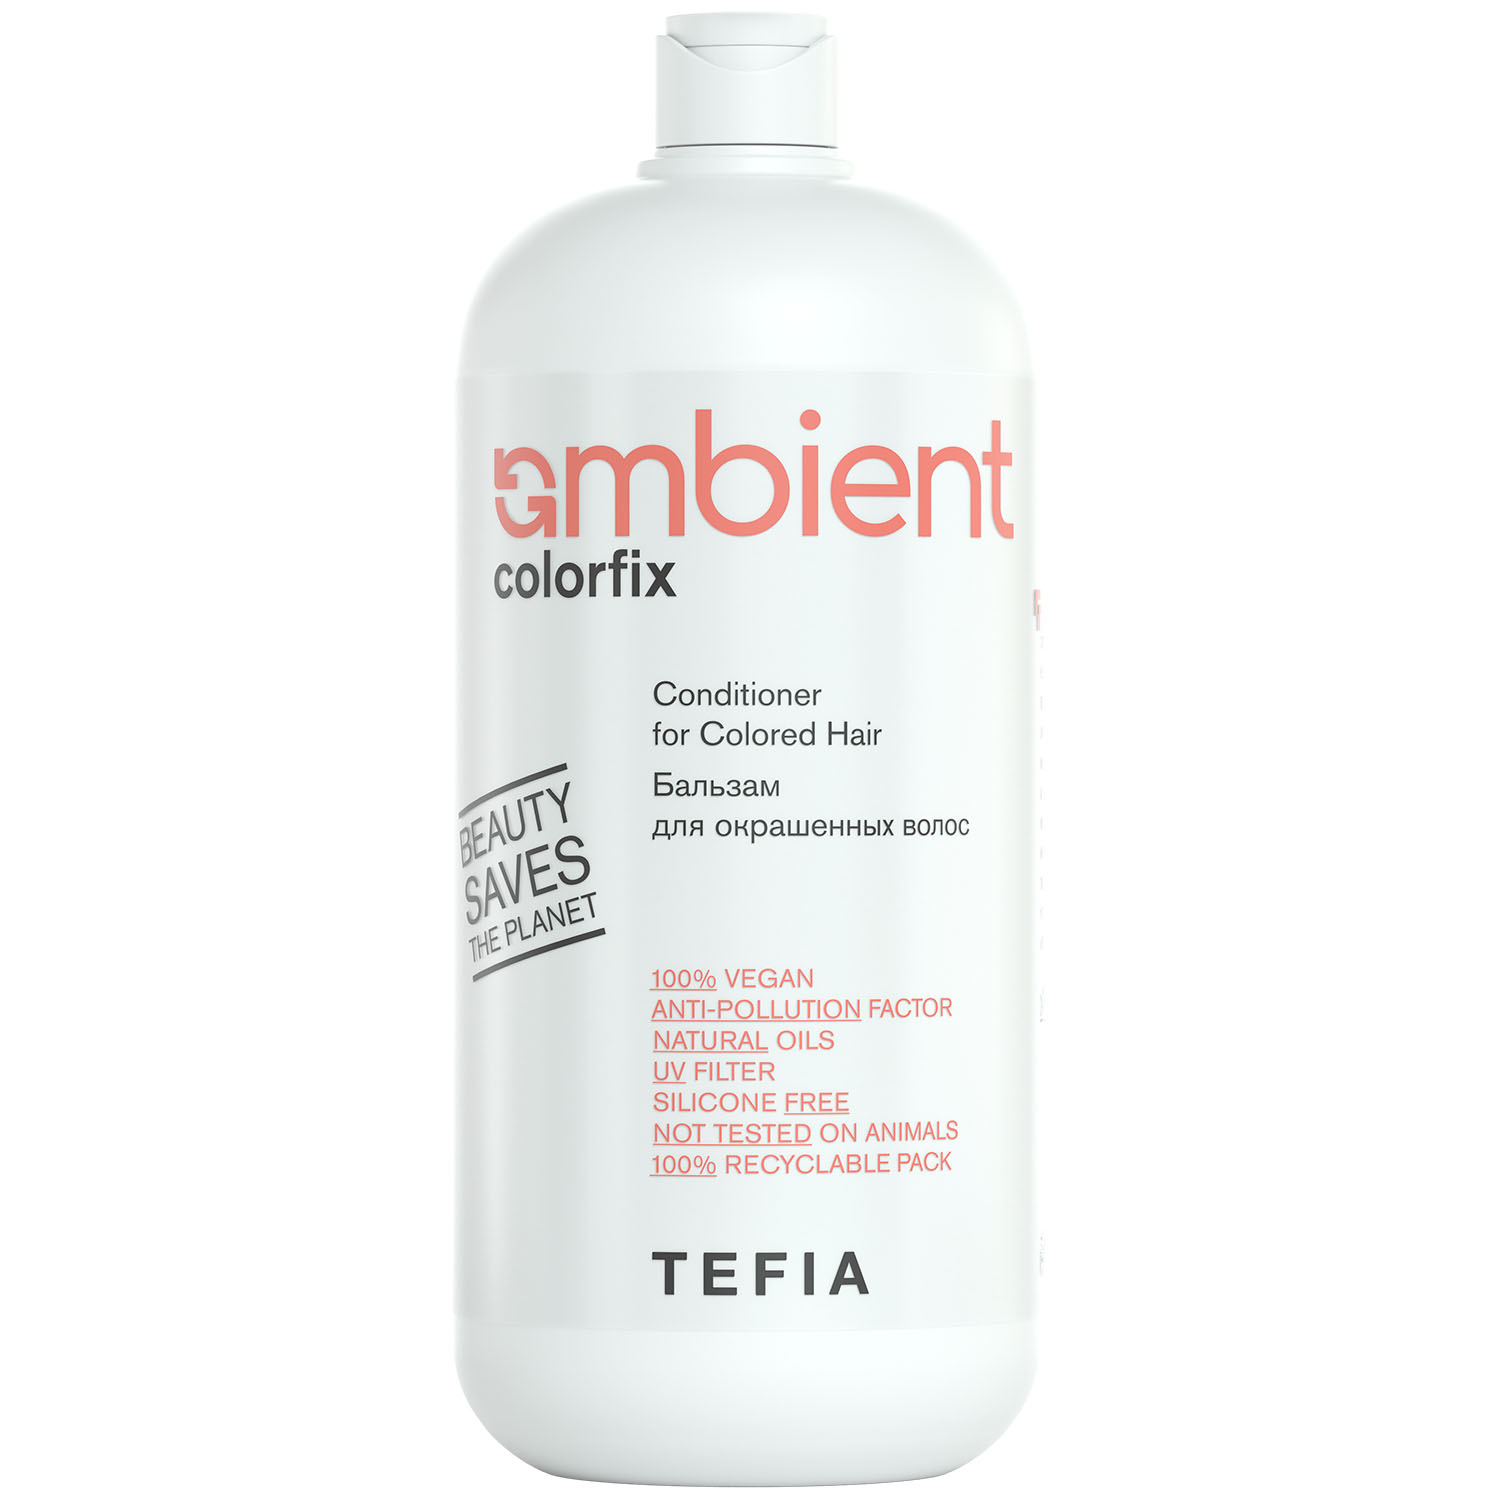 Tefia Бальзам для окрашенных волос Conditioner for Colored Hair, 950 мл (Tefia, Ambient) tefia бальзам кондиционер для длинных волос ambient long 950 мл